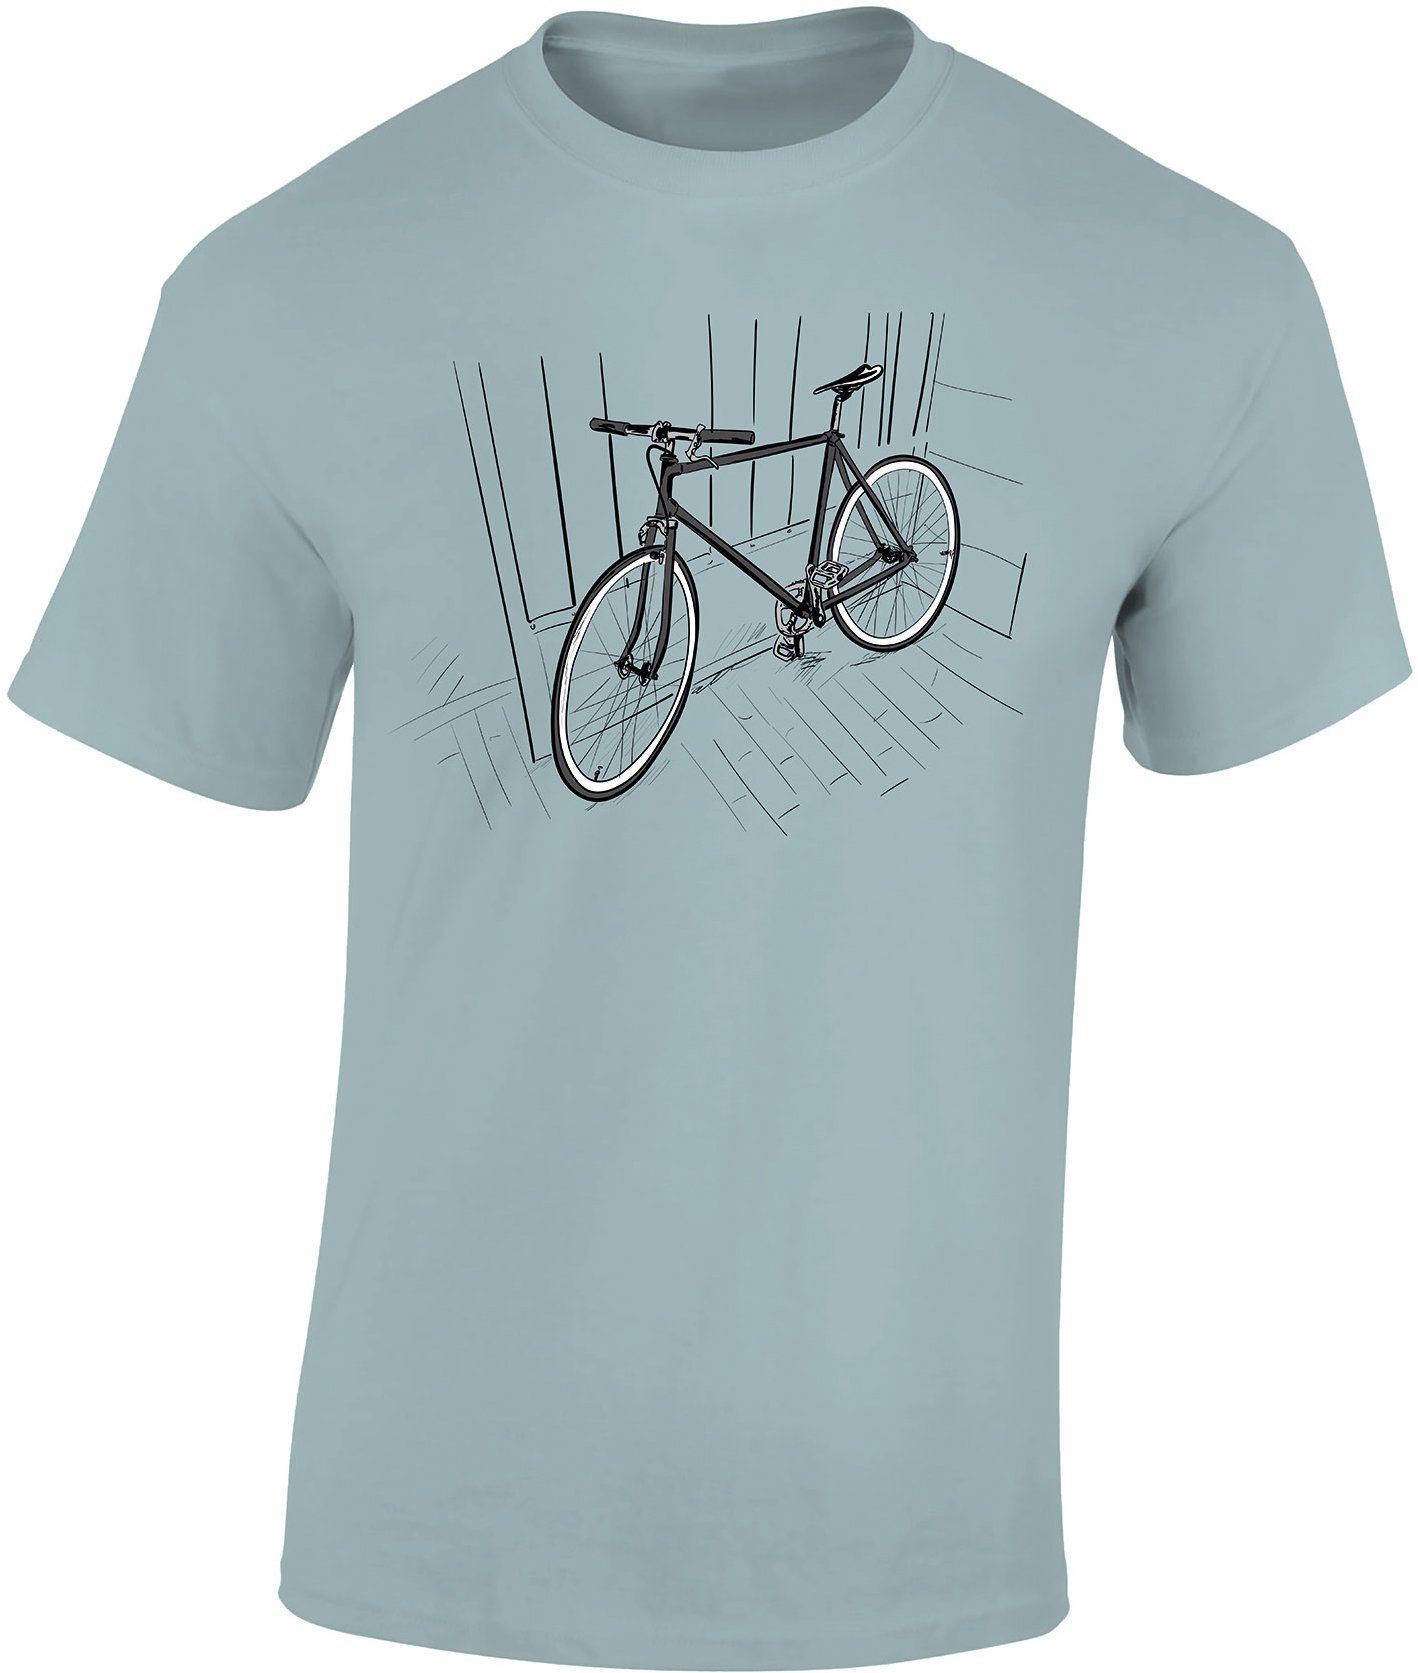 https://i.otto.de/i/otto/fa2690b8-9151-4b36-ba3b-7cf020b384fb/baddery-print-shirt-fahrrad-t-shirt-indoor-bike-sport-tshirts-herren-rennrad-zubehoer-hochwertiger-siebdruck-auch-uebergroessen-aus-baumwolle-ice-blue.jpg?$formatz$